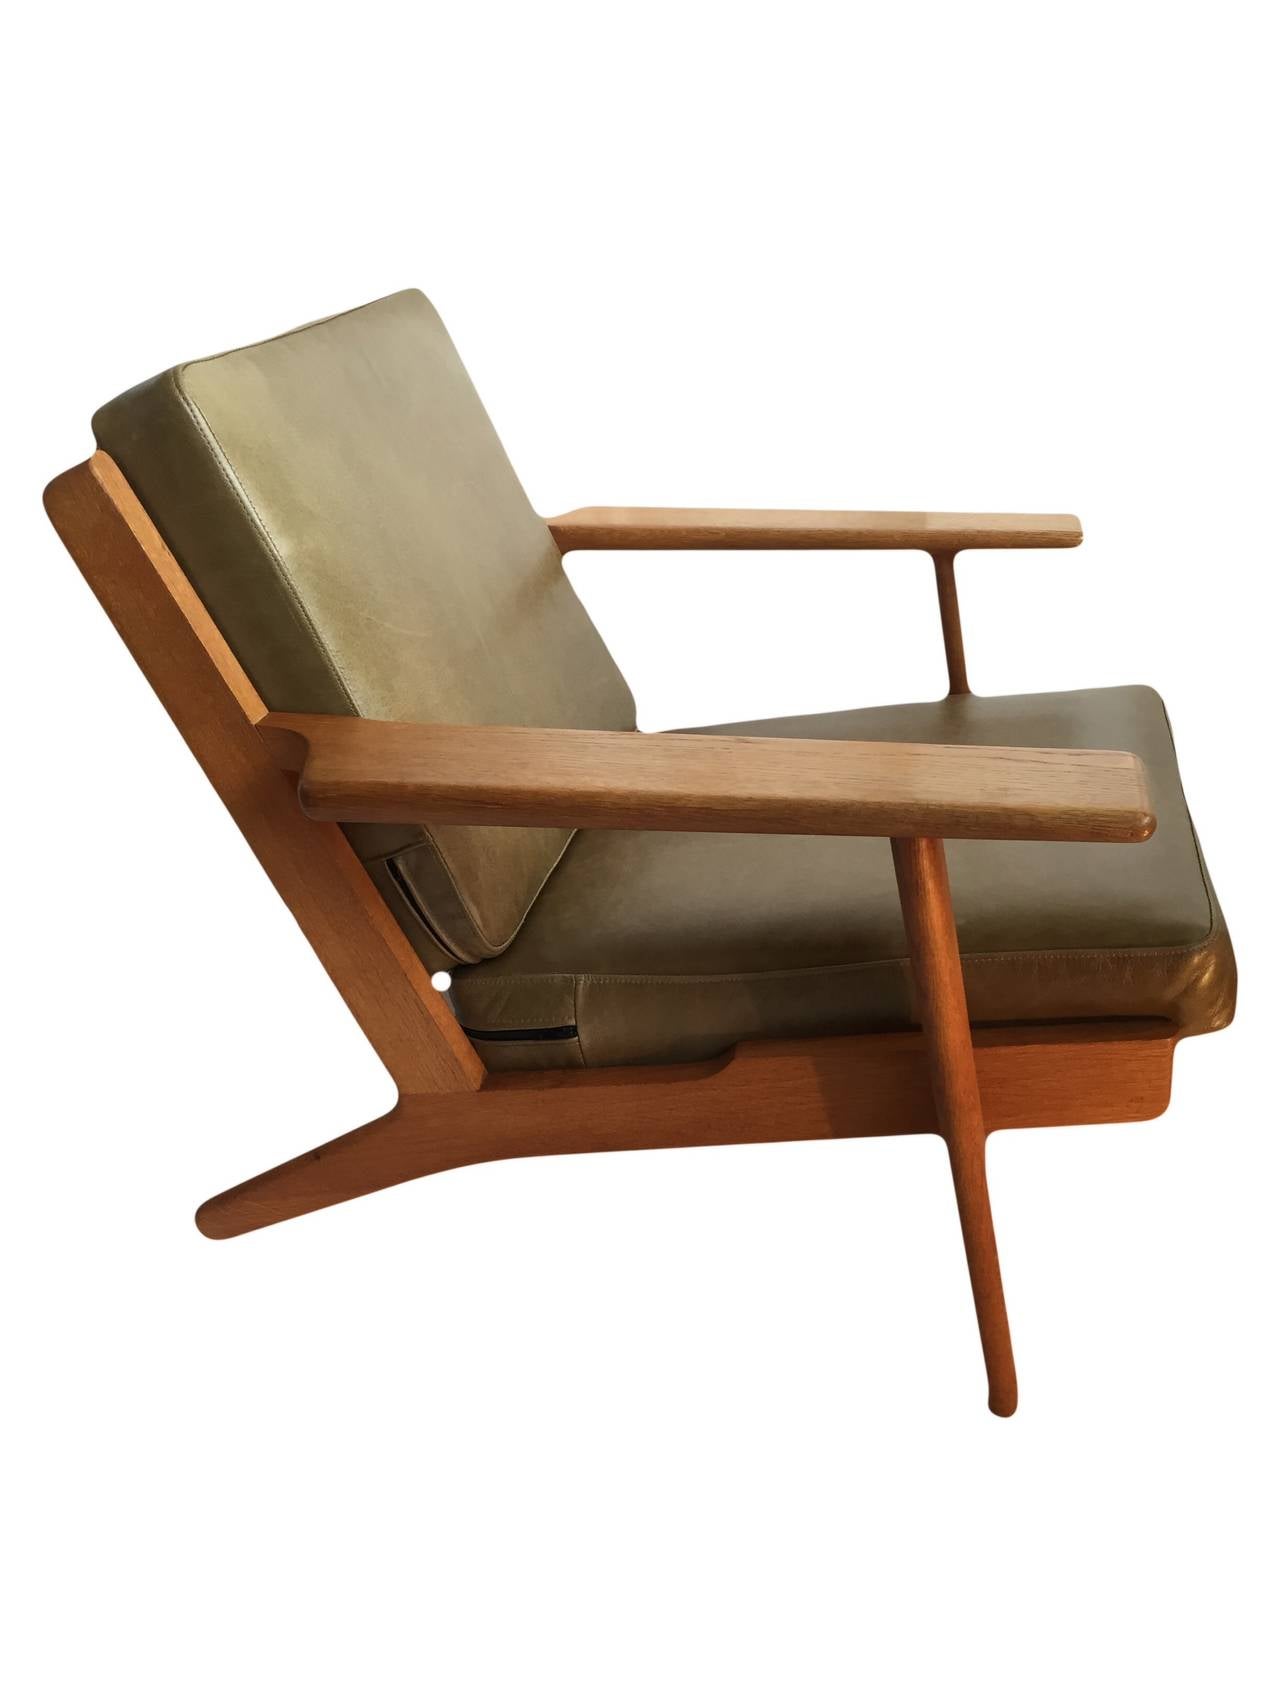 Danish Hans J Wegner, original Getama ge290 plank chair